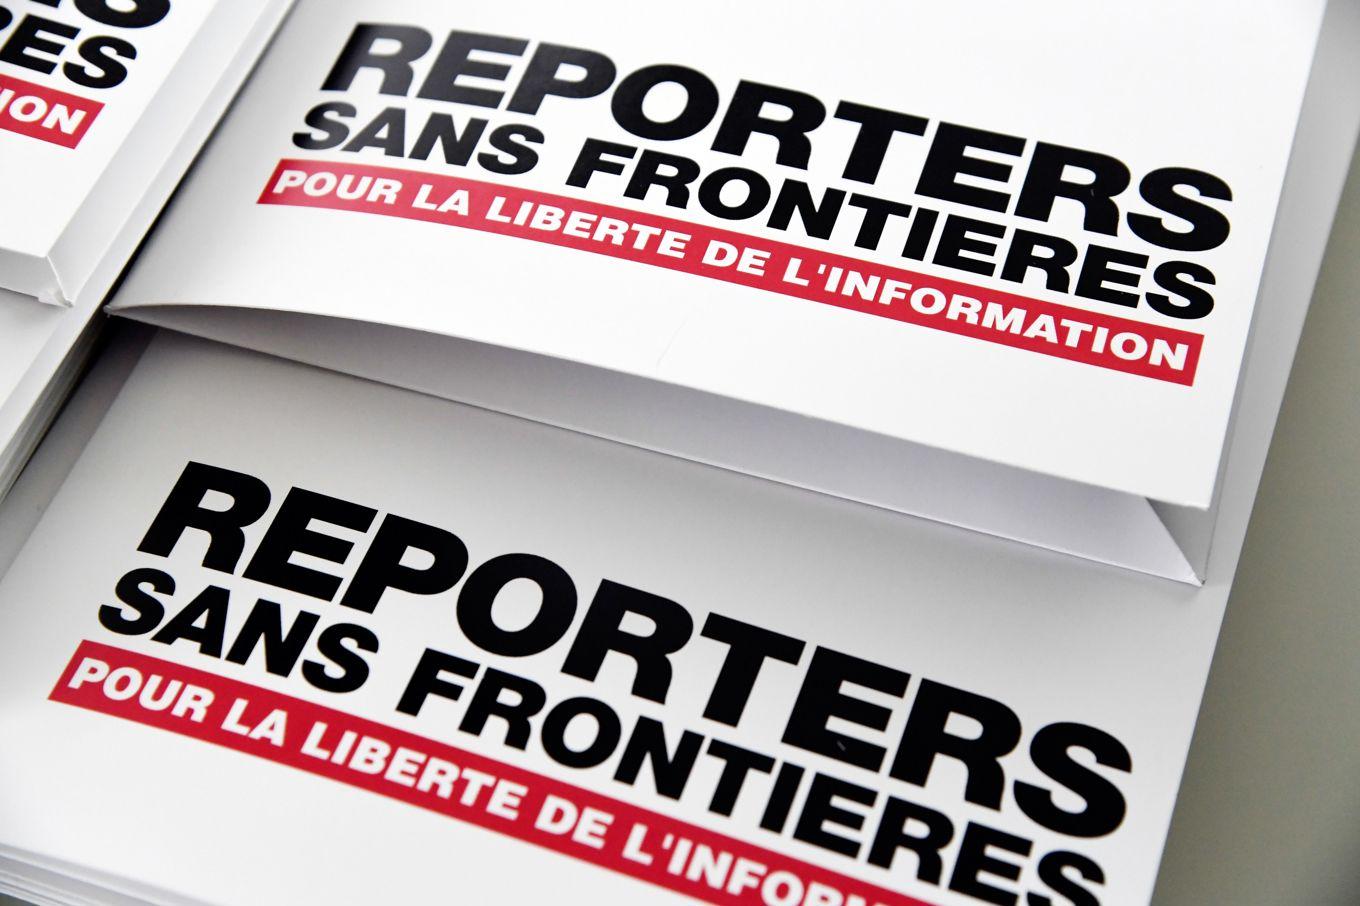 Enligt organisationen Reportrar utan gränser tar stater och myndigheter i världen allt mindre ansvar för att värna pressfriheten. Foto: Bertrand Guay/AFP via Getty Images